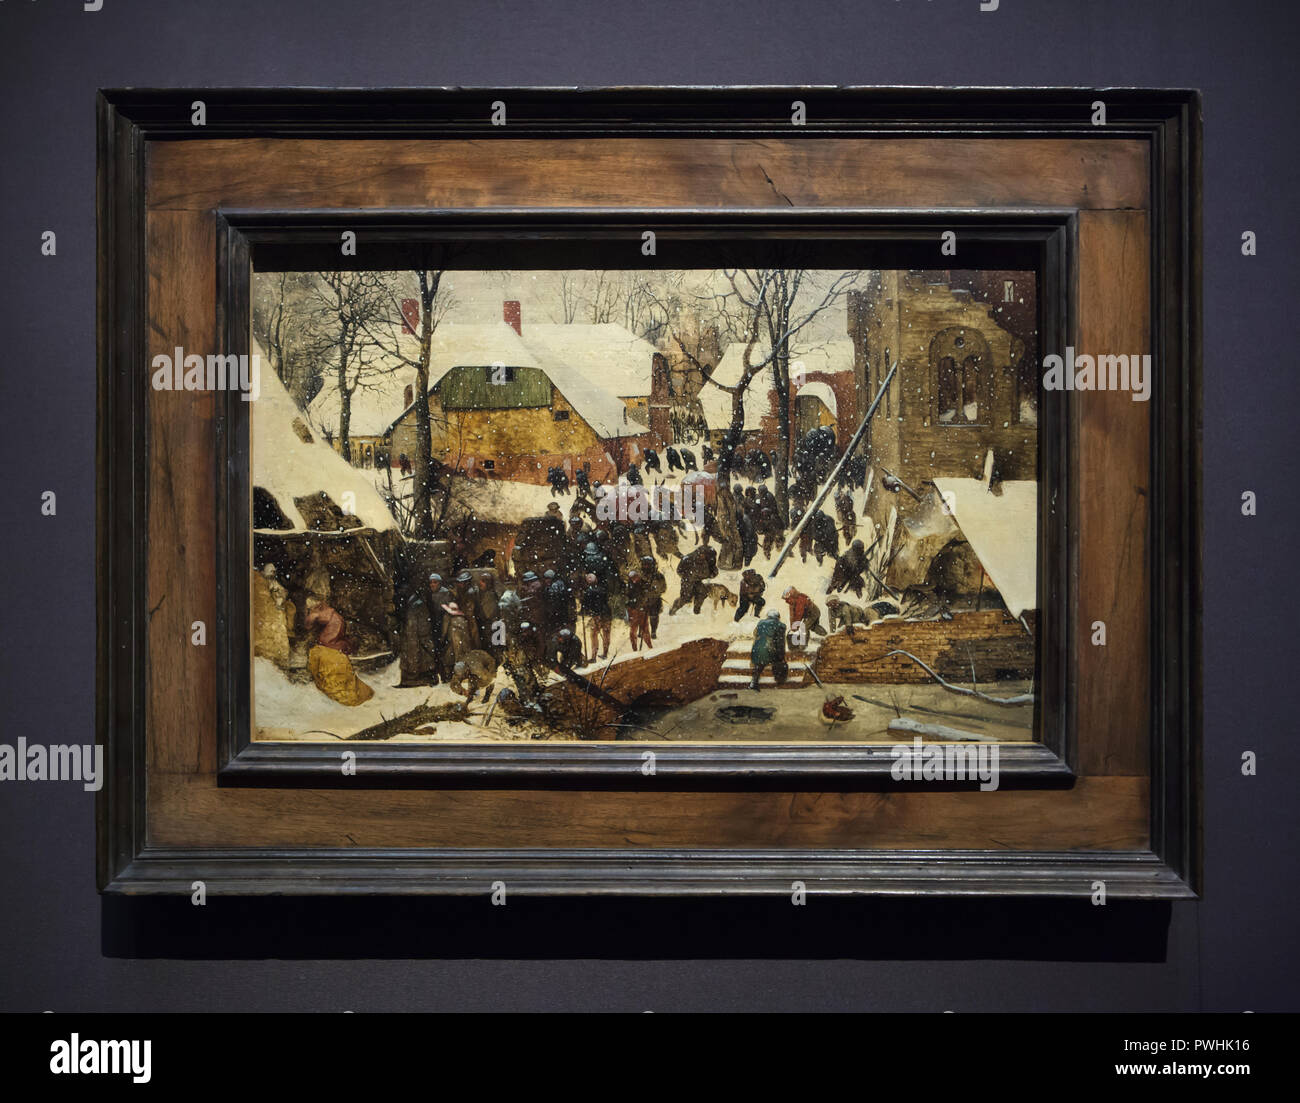 Peinture 'l'Adoration des Mages dans la neige' par peintre néerlandais Pieter Bruegel l'Ancien (1567) sur l'affichage à son exposition rétrospective à la Kunsthistorisches Museum (Musée de l'histoire de l'Art) à Vienne, Autriche. L'exposition marquant le 450e anniversaire de la mort de Pieter Bruegel l'ancien s'exécute jusqu'à 13 janvier 2019. Banque D'Images